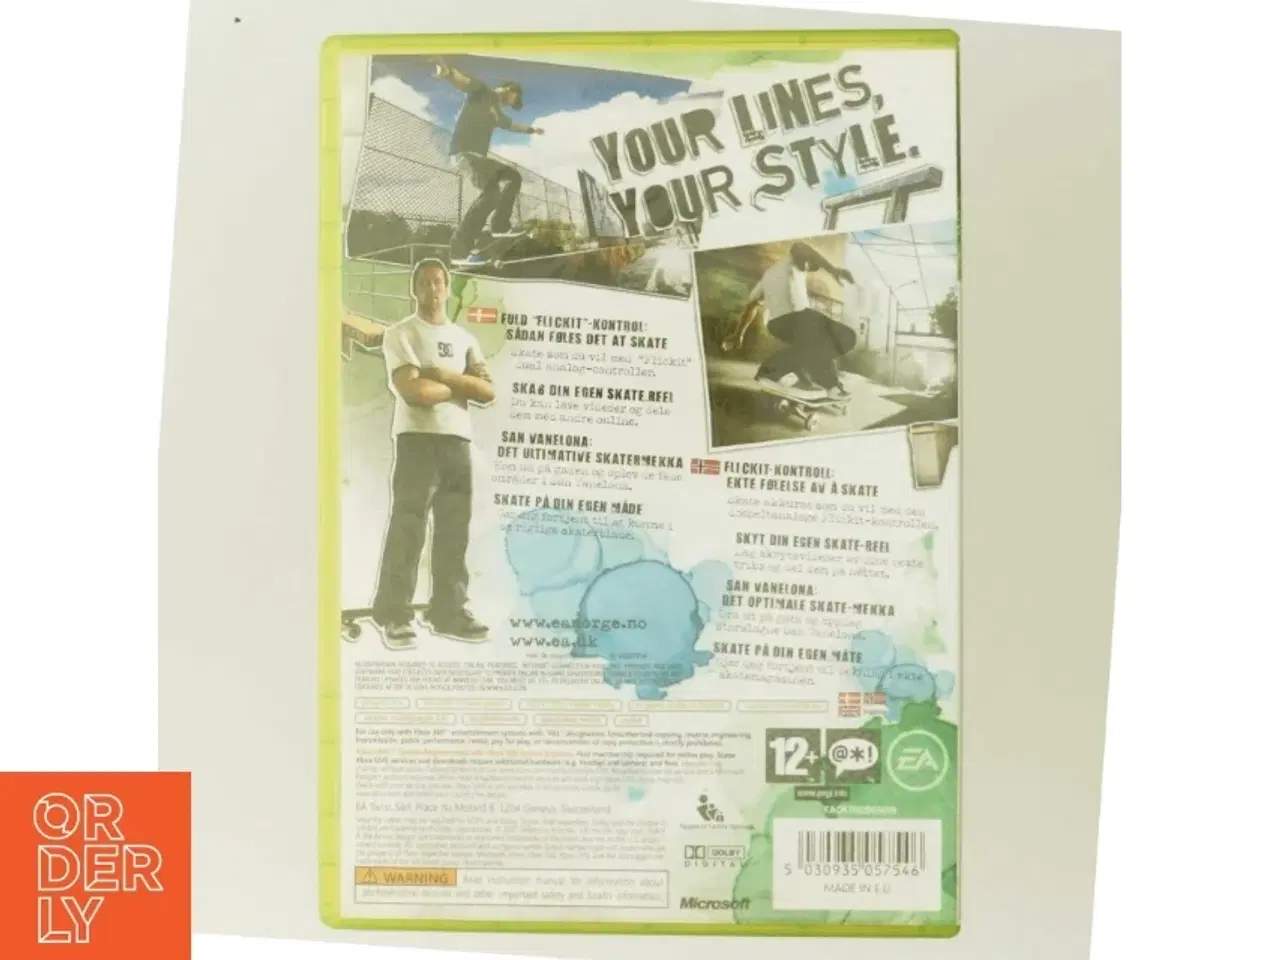 Billede 3 - Skate videospil til Xbox 360 fra Electronic Arts